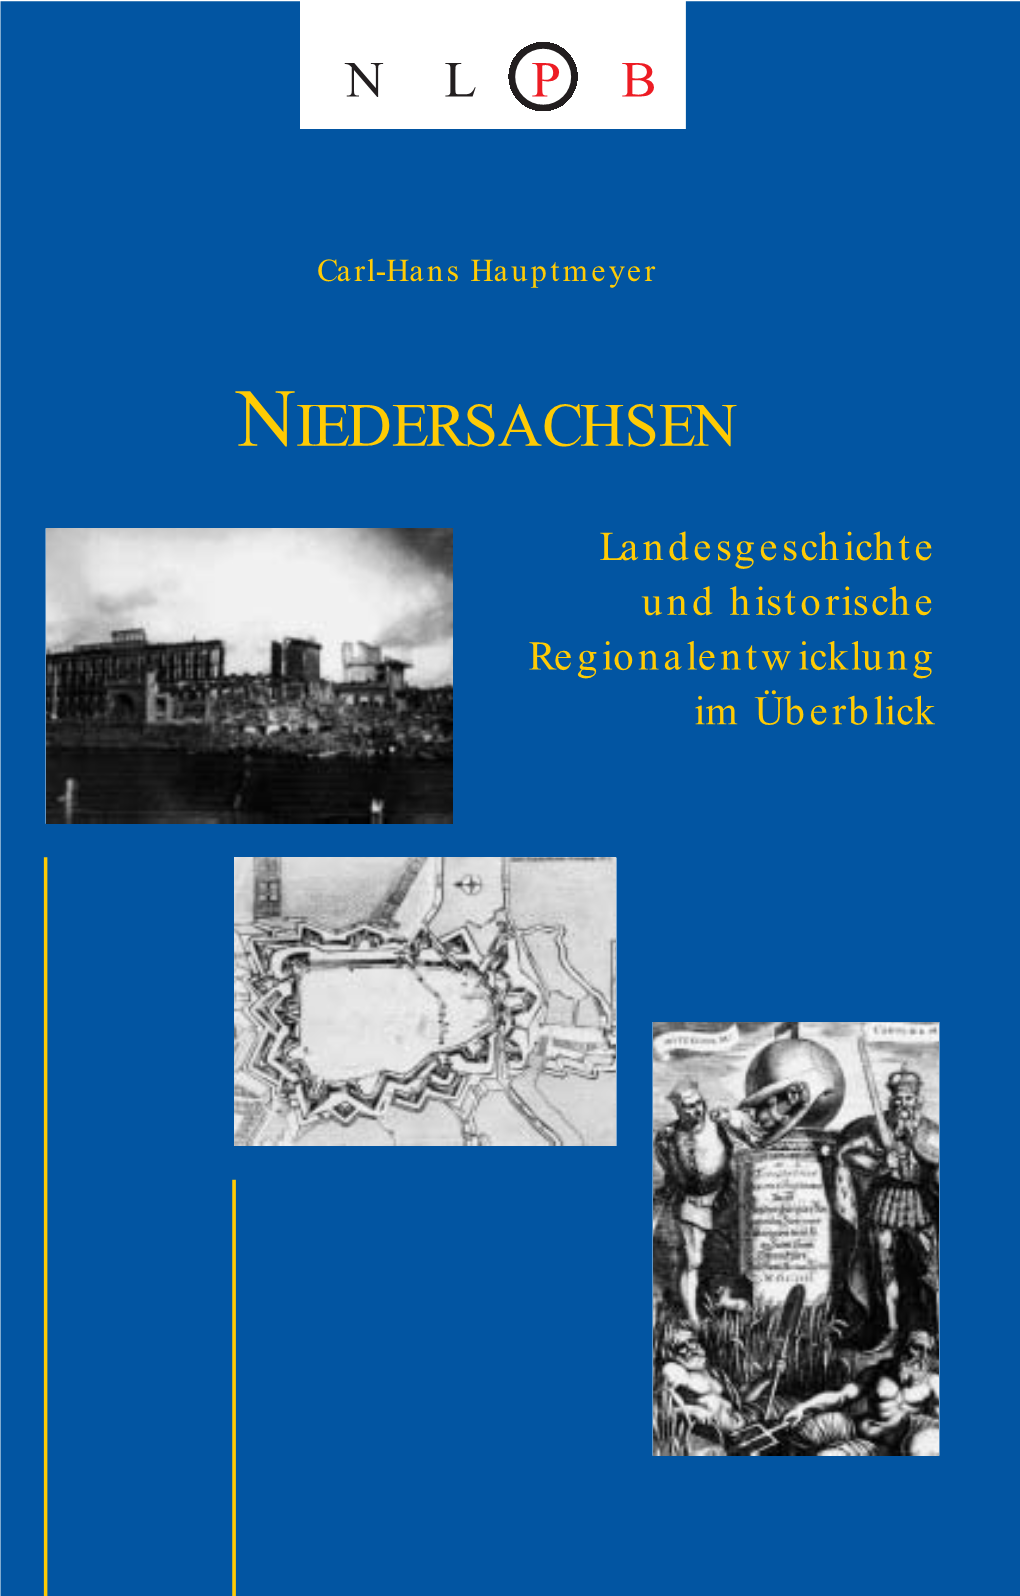 Landesgeschichte Und Historische Regionalentwicklung Im Überblick Carl-Hans Hauptmeyer